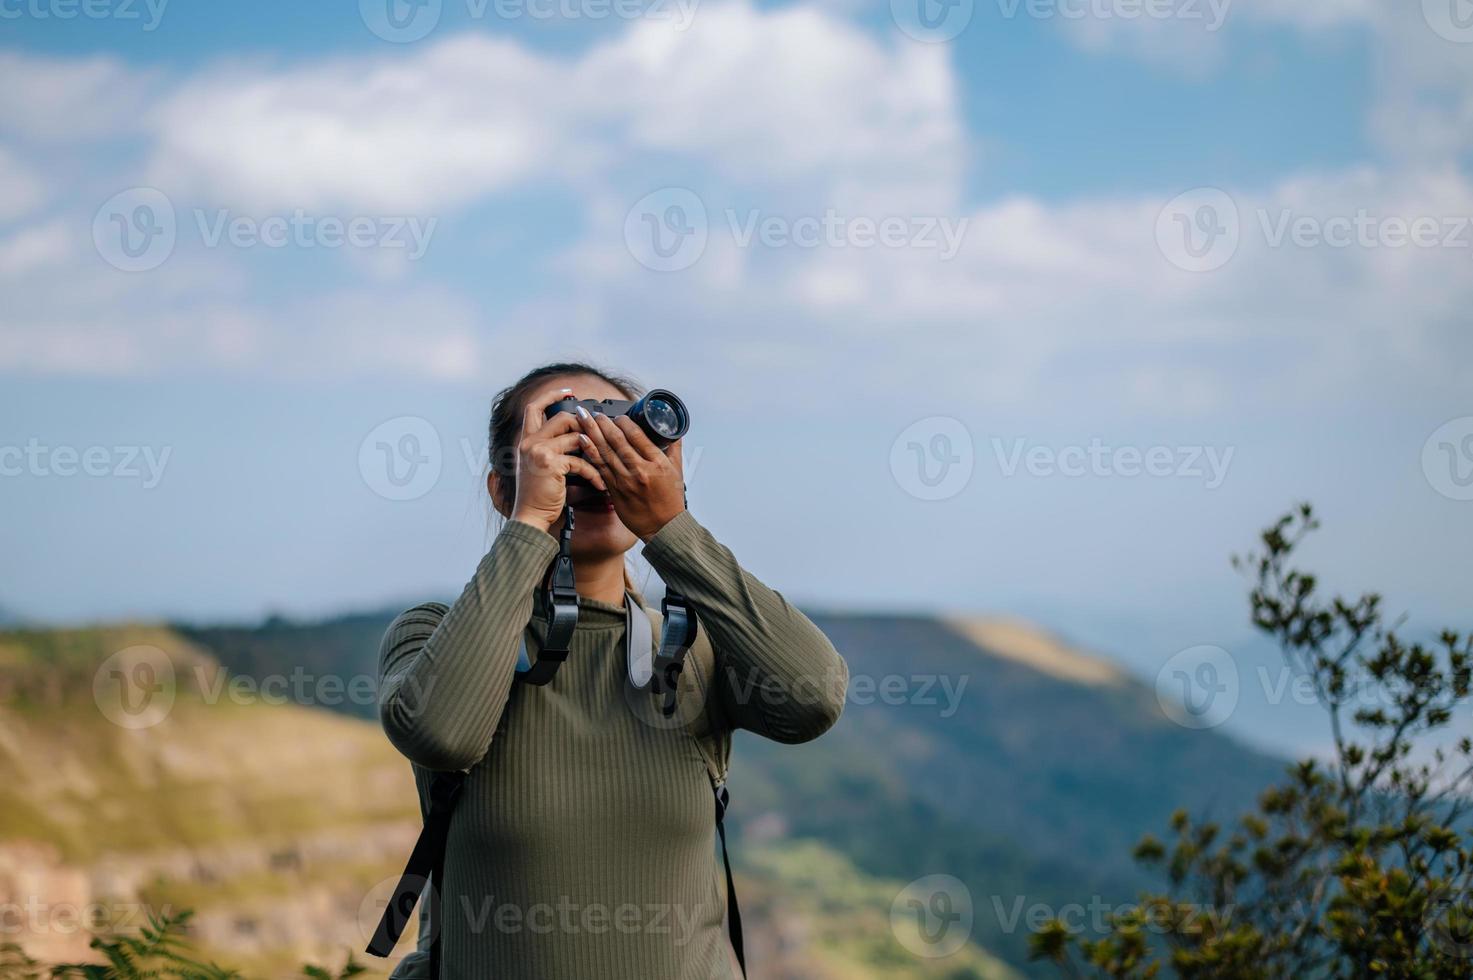 jovem caminhada fêmea usar Câmera fotografia em rochoso montanha pico foto